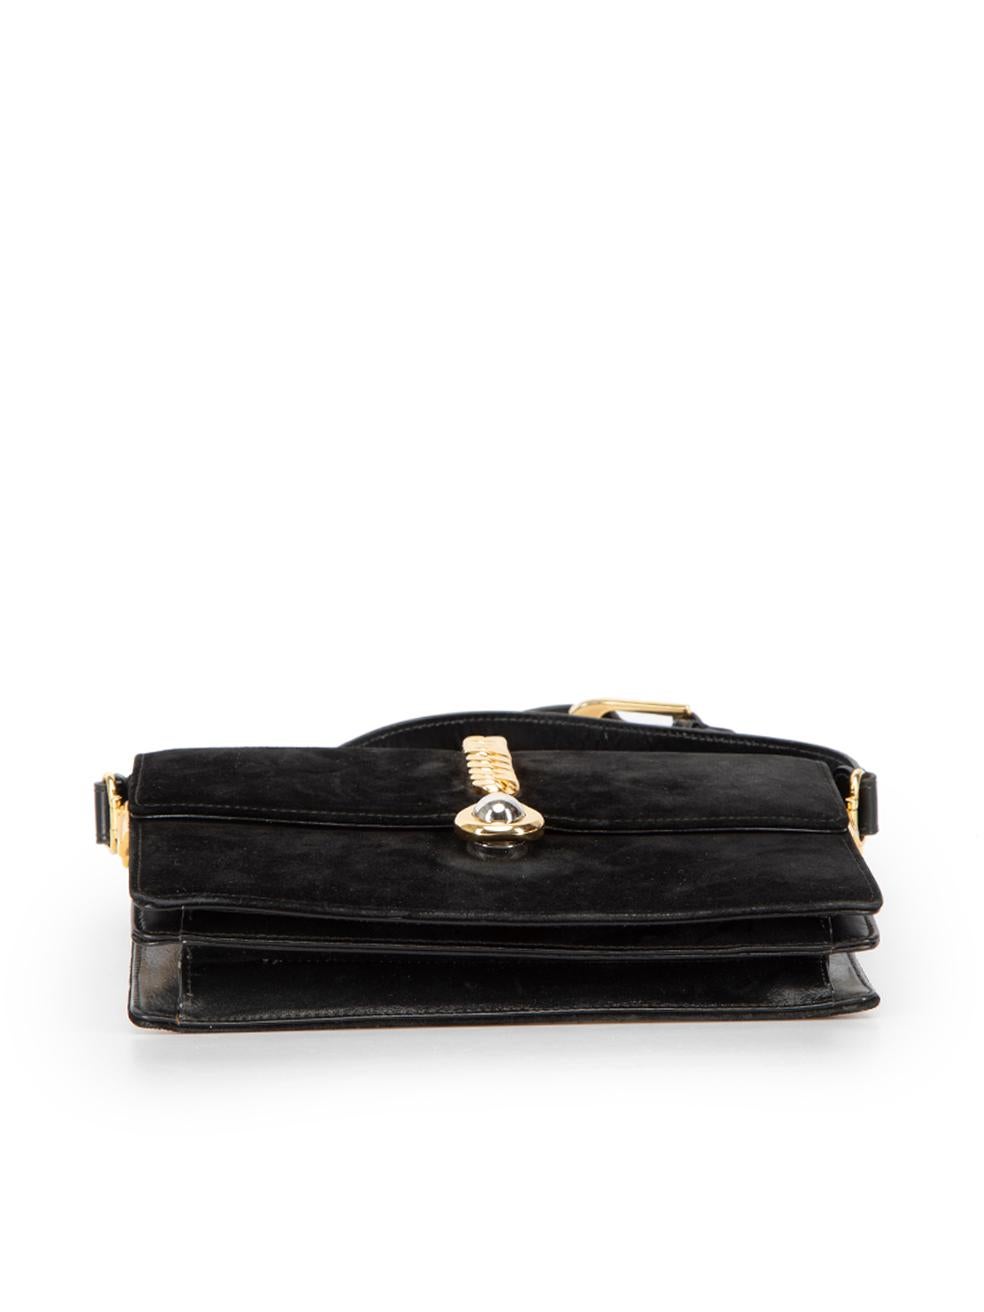 Gucci Women's Vintage Black Suede Chain Accent Flap Shoulder Bag 1